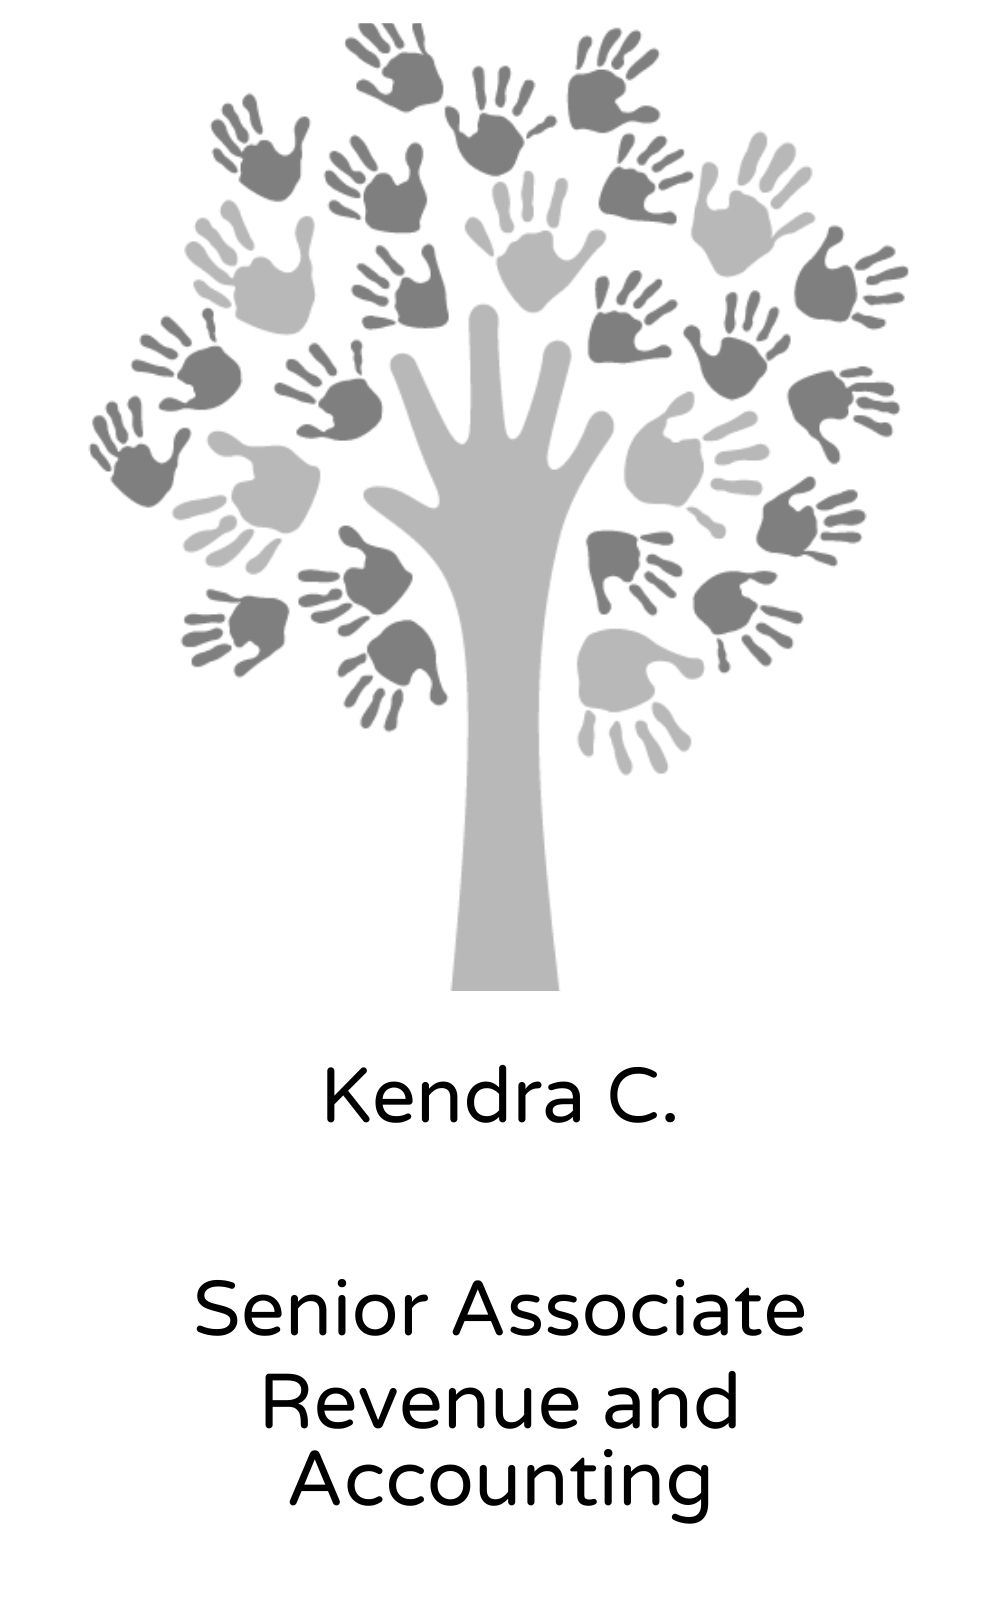 Kendra C, Senior Associate, Revenue and Accounting